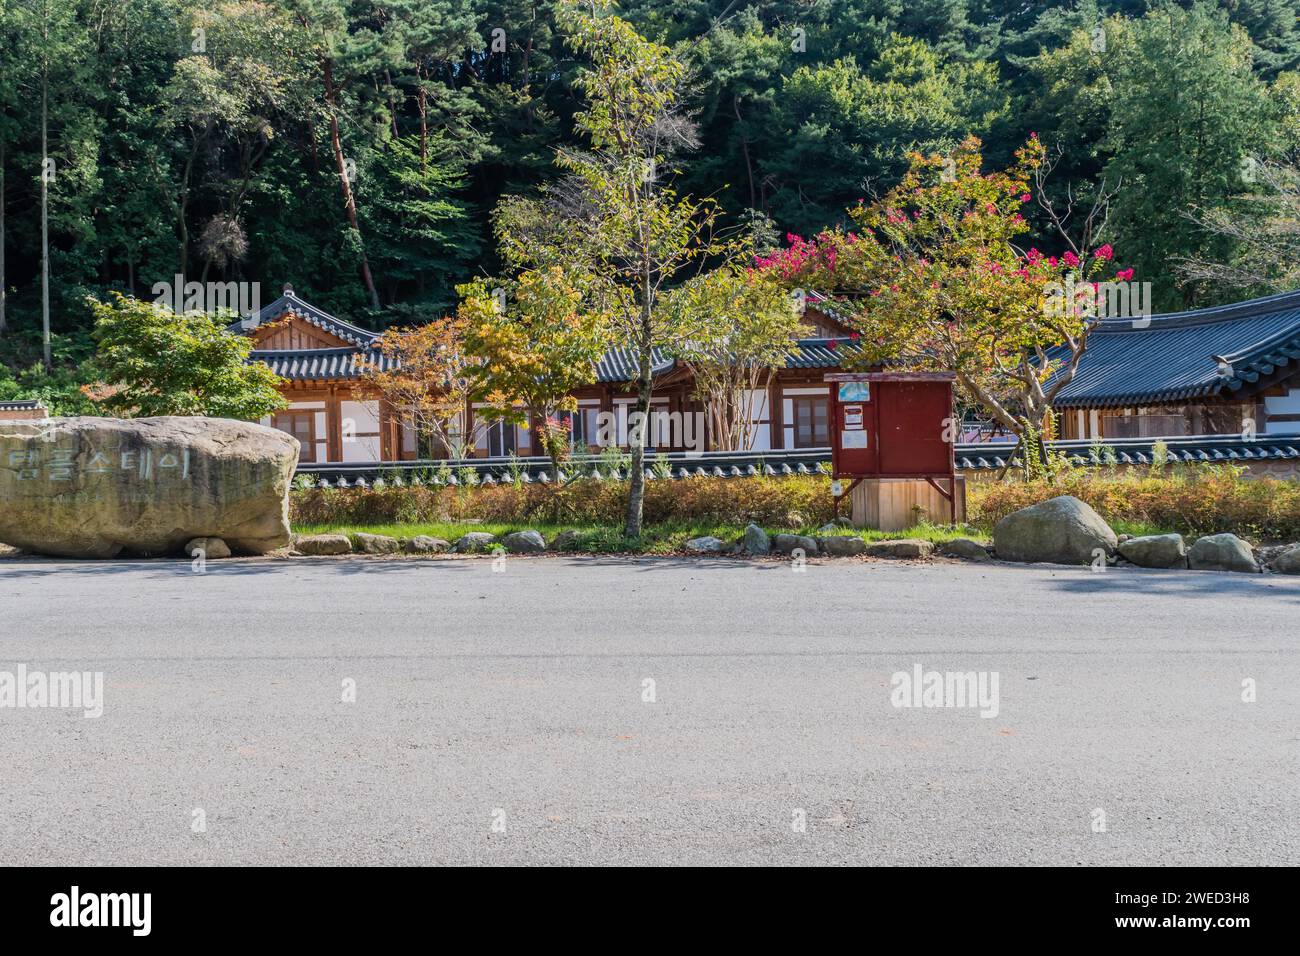 Edifici utilizzati per i residenti del tempio al tempio di Geumsansa, con lussureggianti alberi verdi sullo sfondo a Gimje-si, Corea del Sud Foto Stock